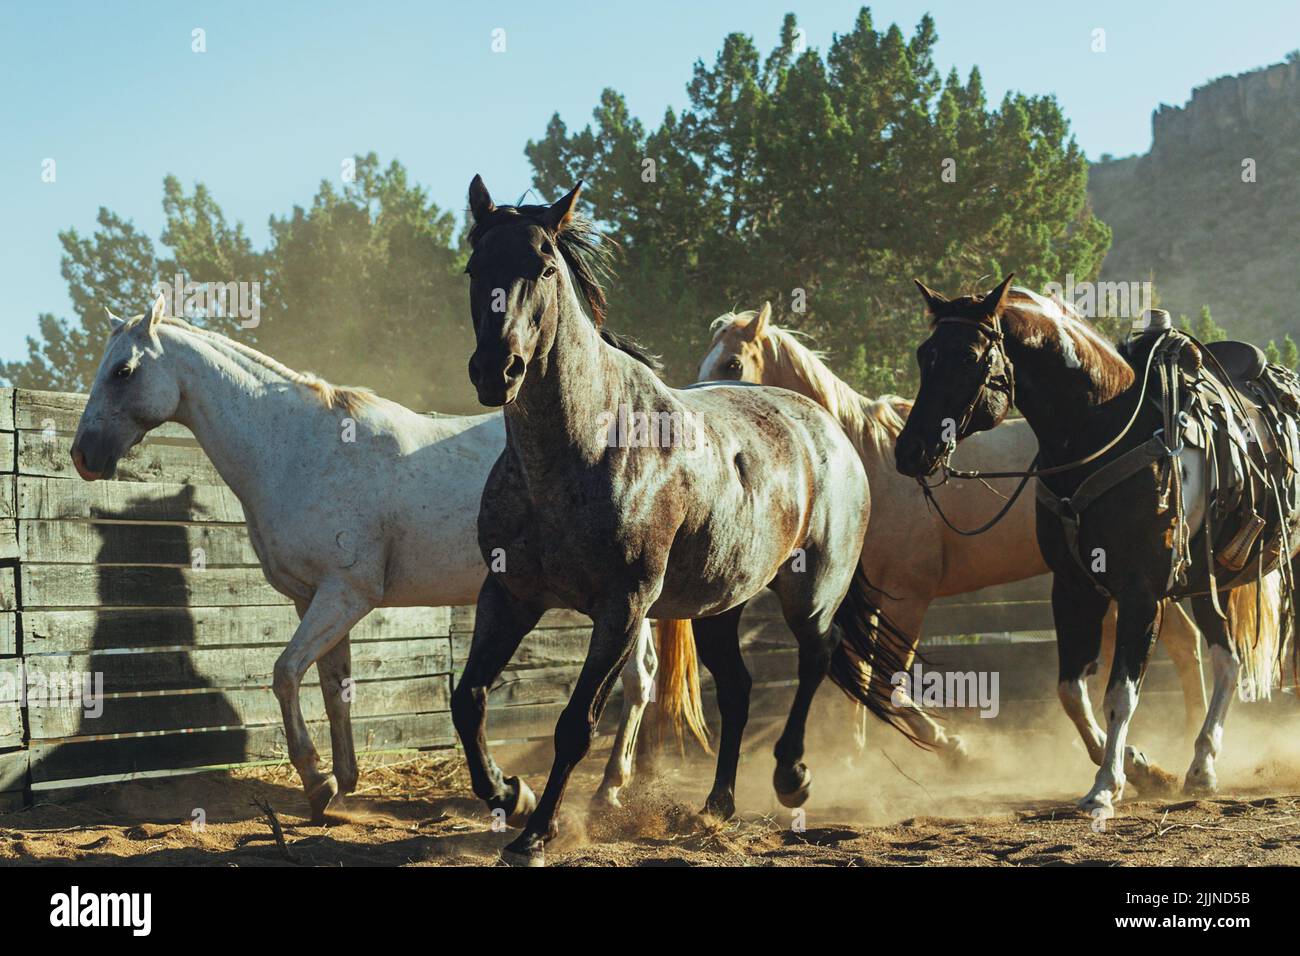 Une belle prise de vue de chevaux tournant dans le paddock en plein soleil au Texas, États-Unis Banque D'Images